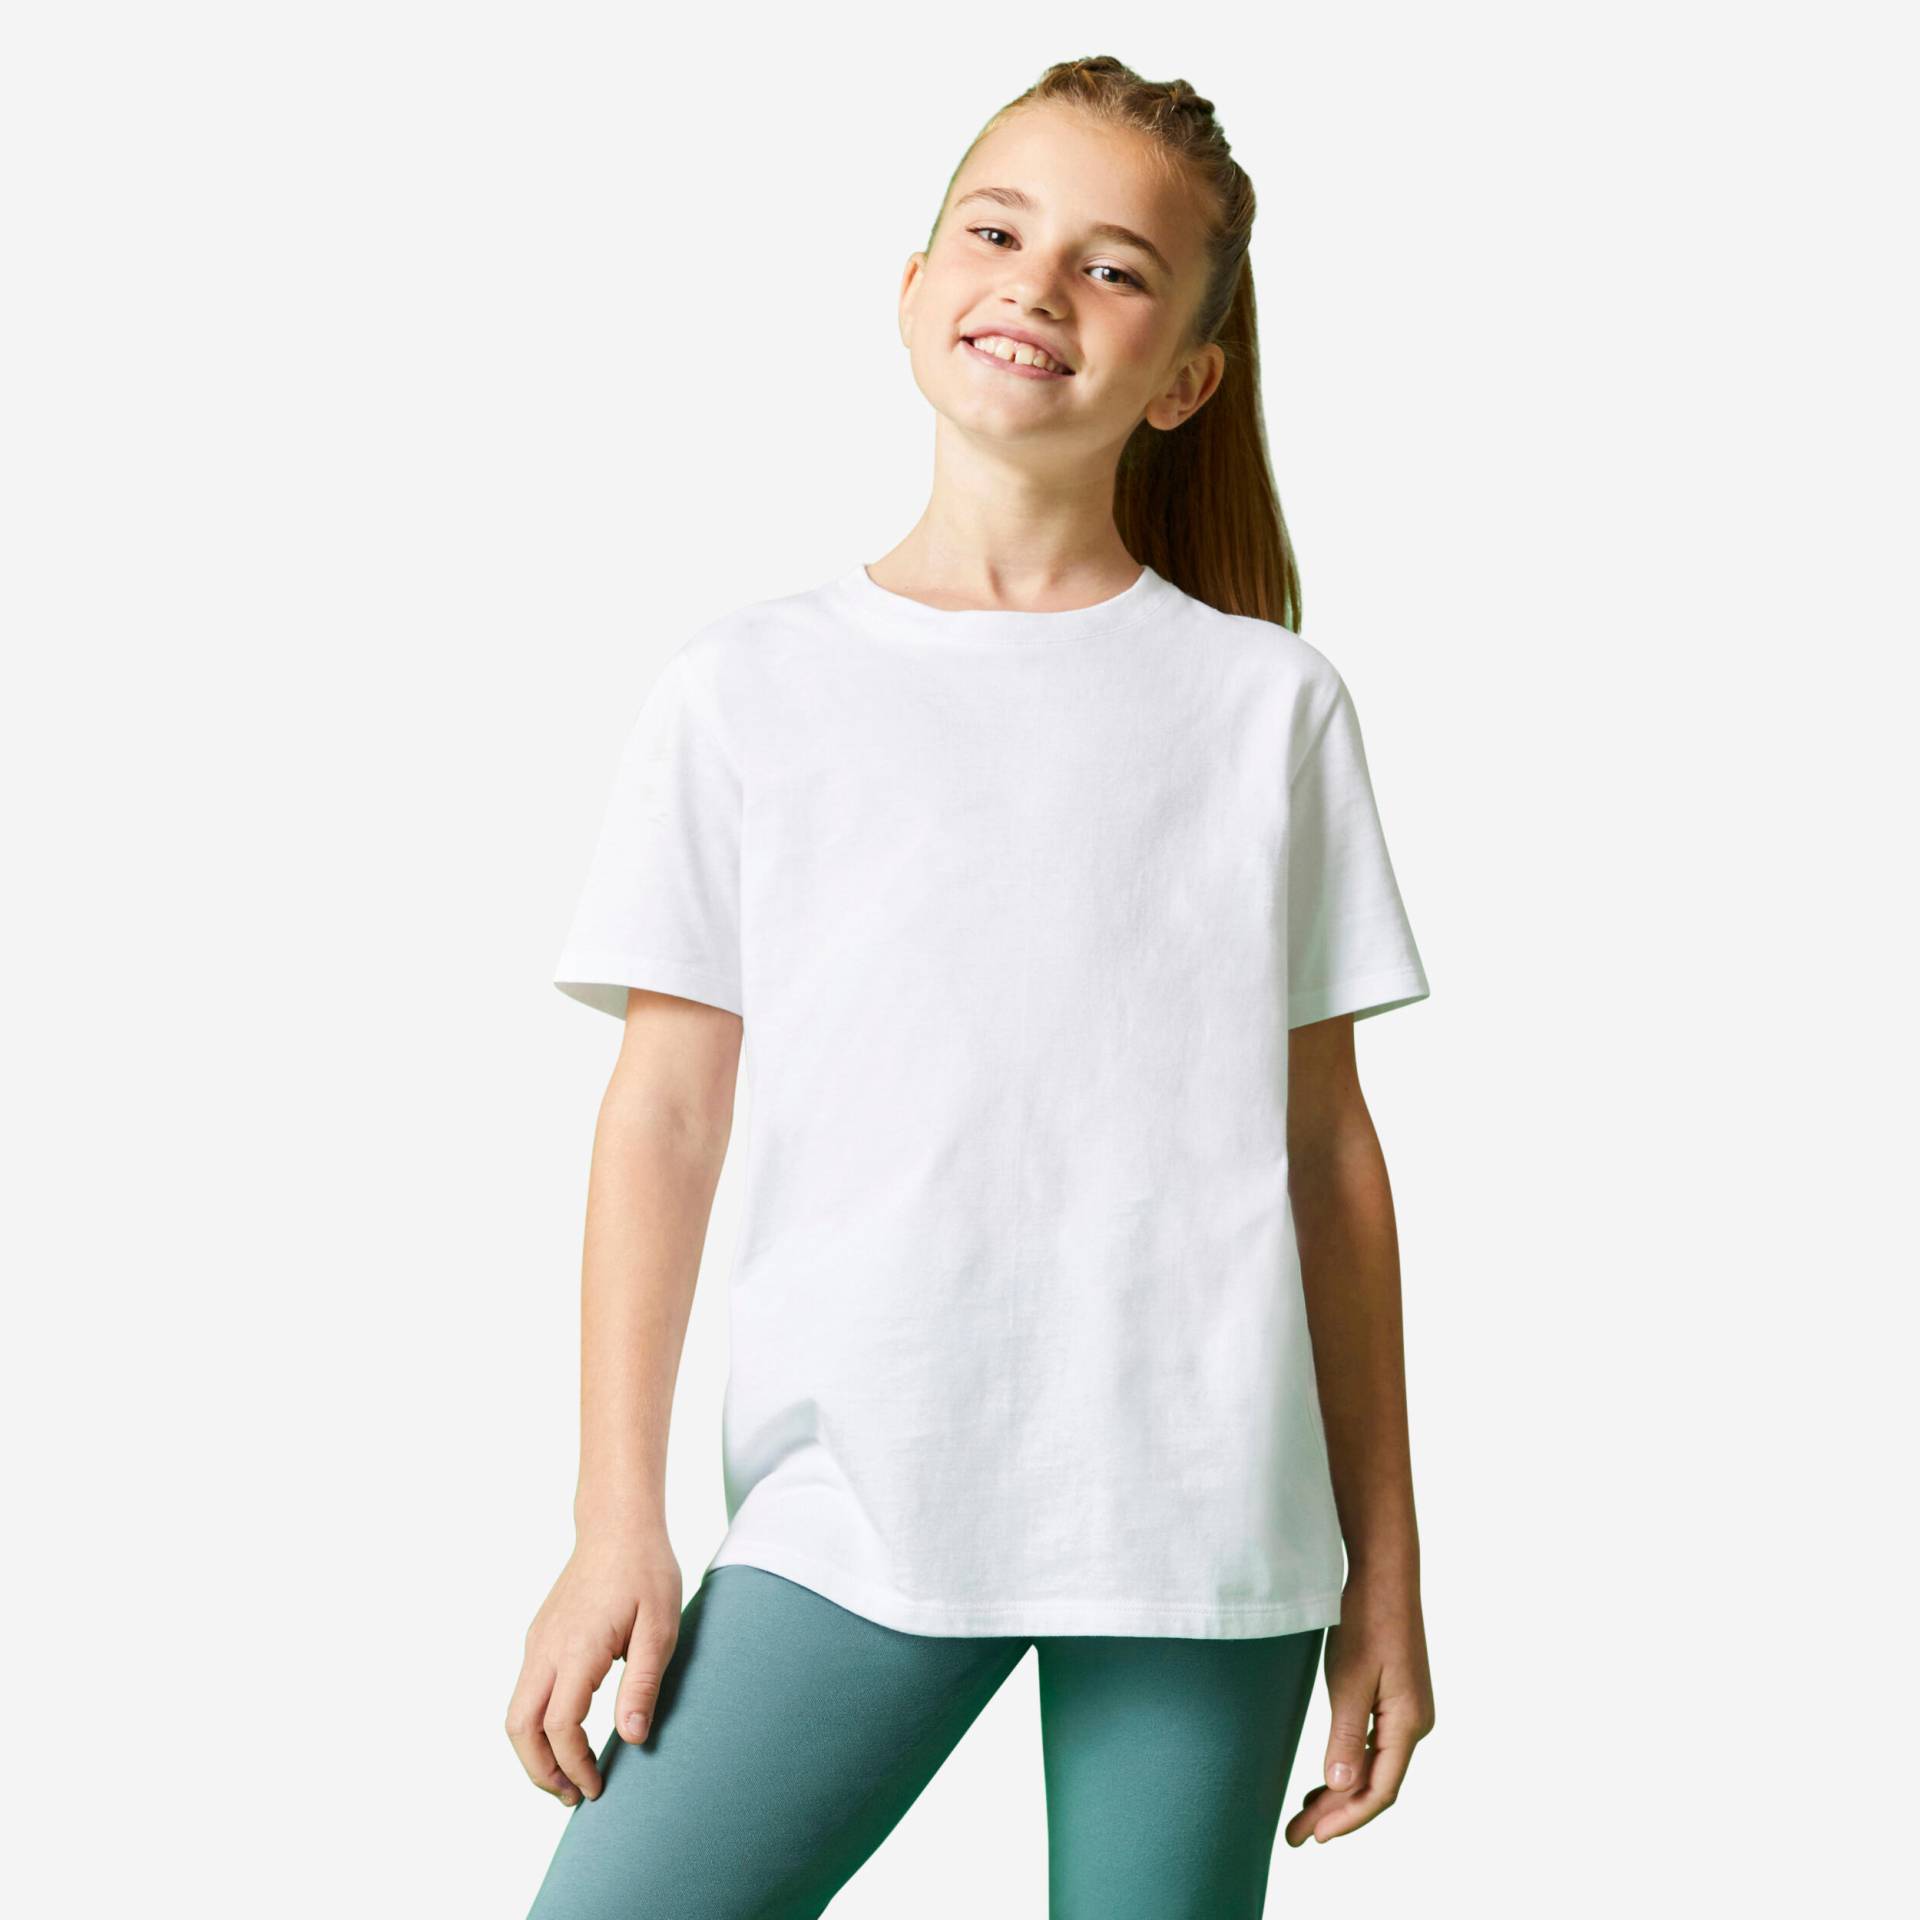 T-Shirt Kinder - 500 Baumwollmix weiss von Domyos